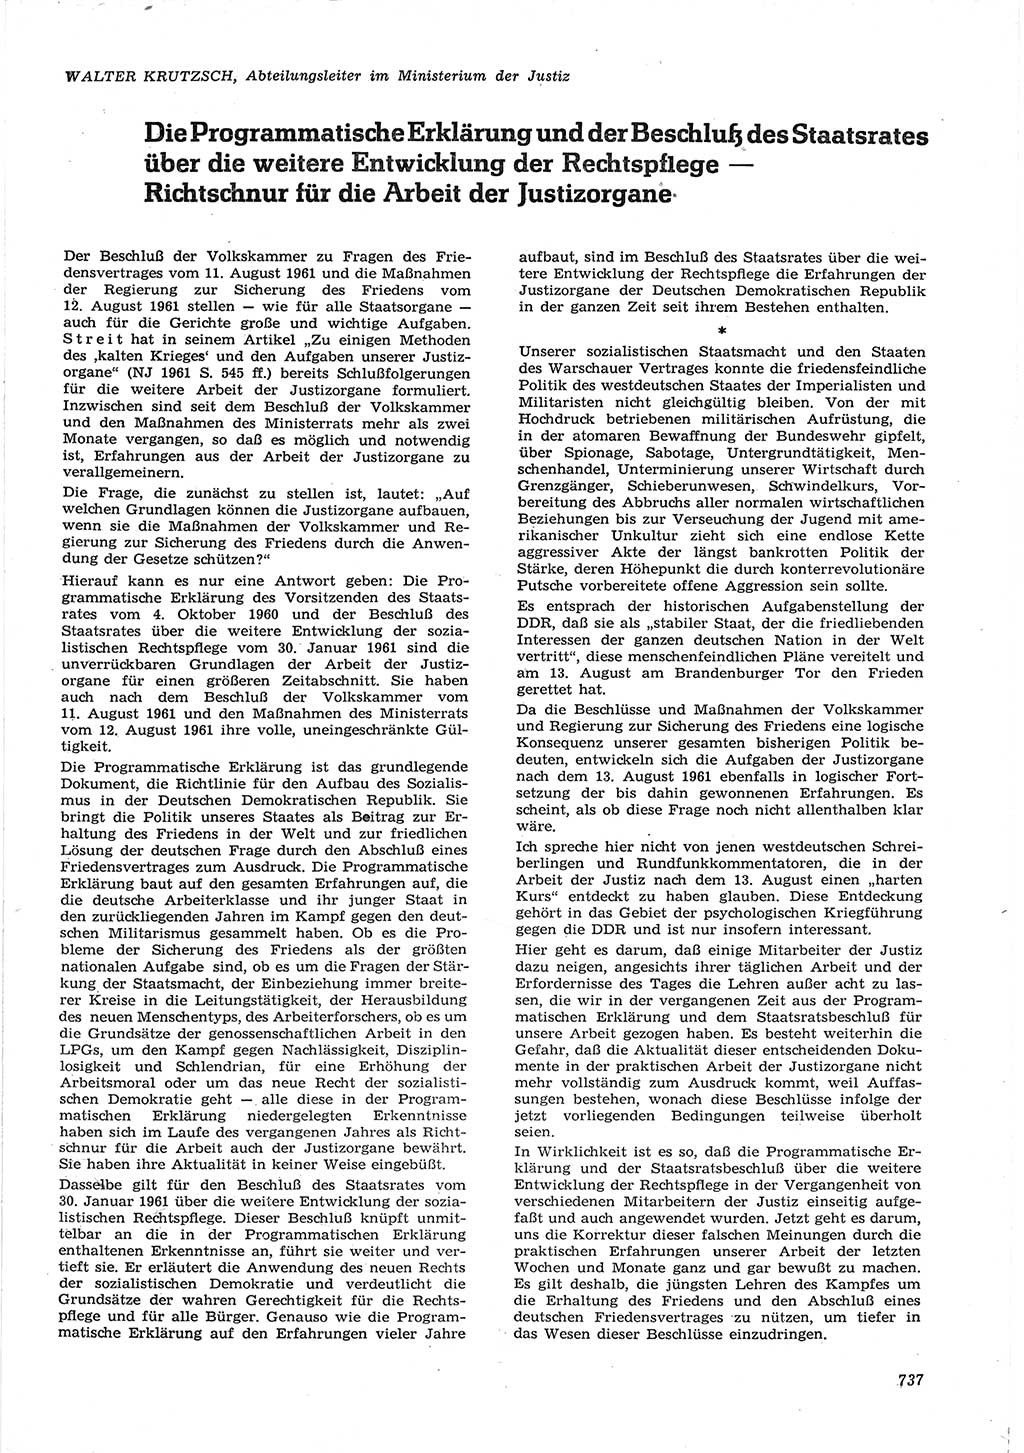 Neue Justiz (NJ), Zeitschrift für Recht und Rechtswissenschaft [Deutsche Demokratische Republik (DDR)], 15. Jahrgang 1961, Seite 737 (NJ DDR 1961, S. 737)